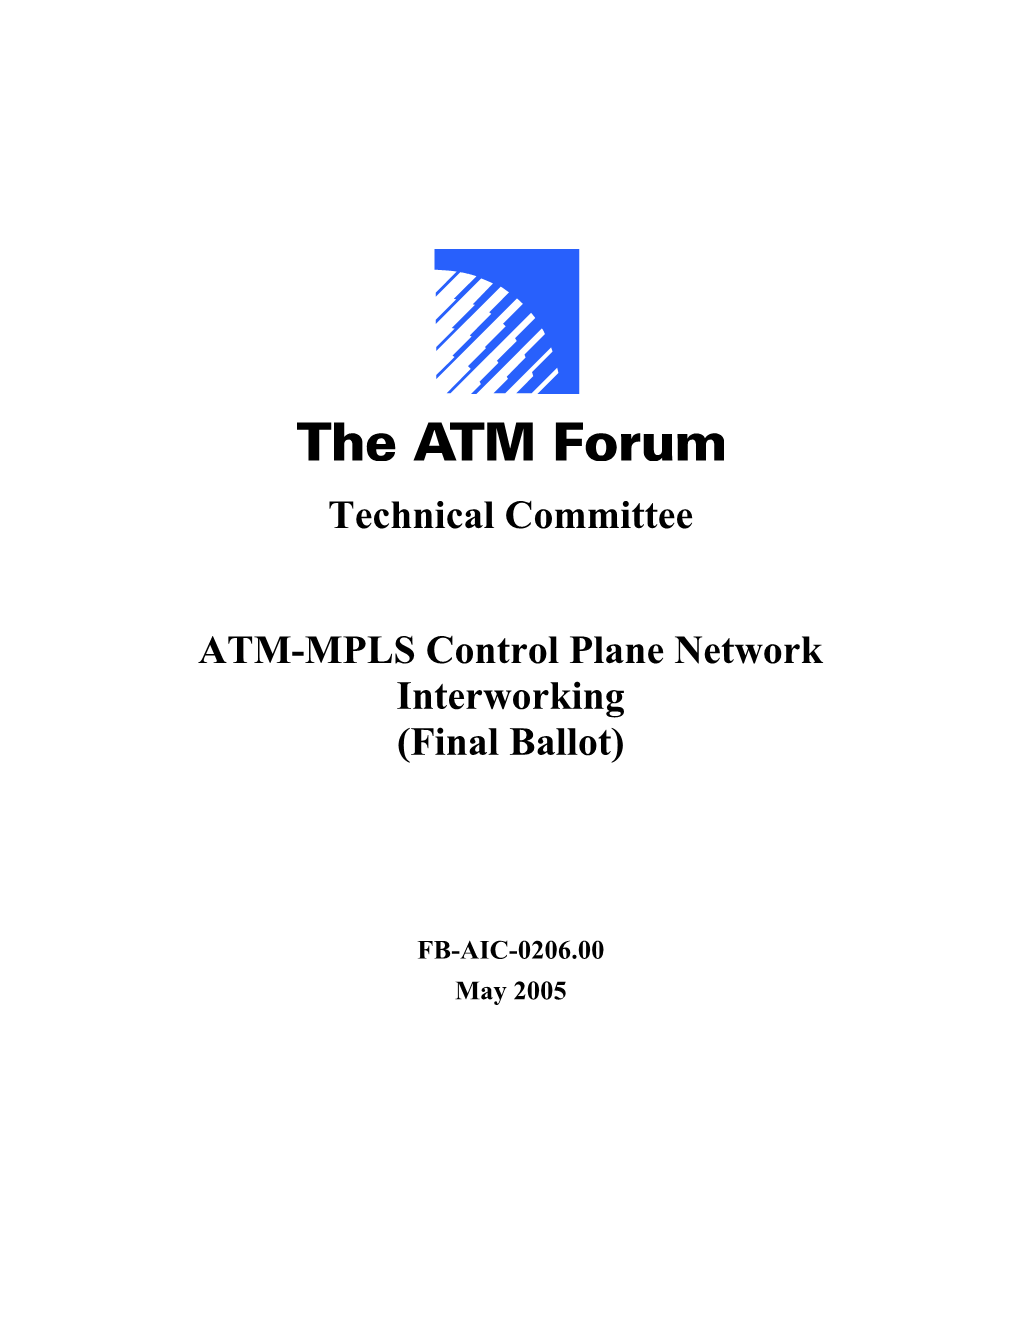 ATM Forum Procedures